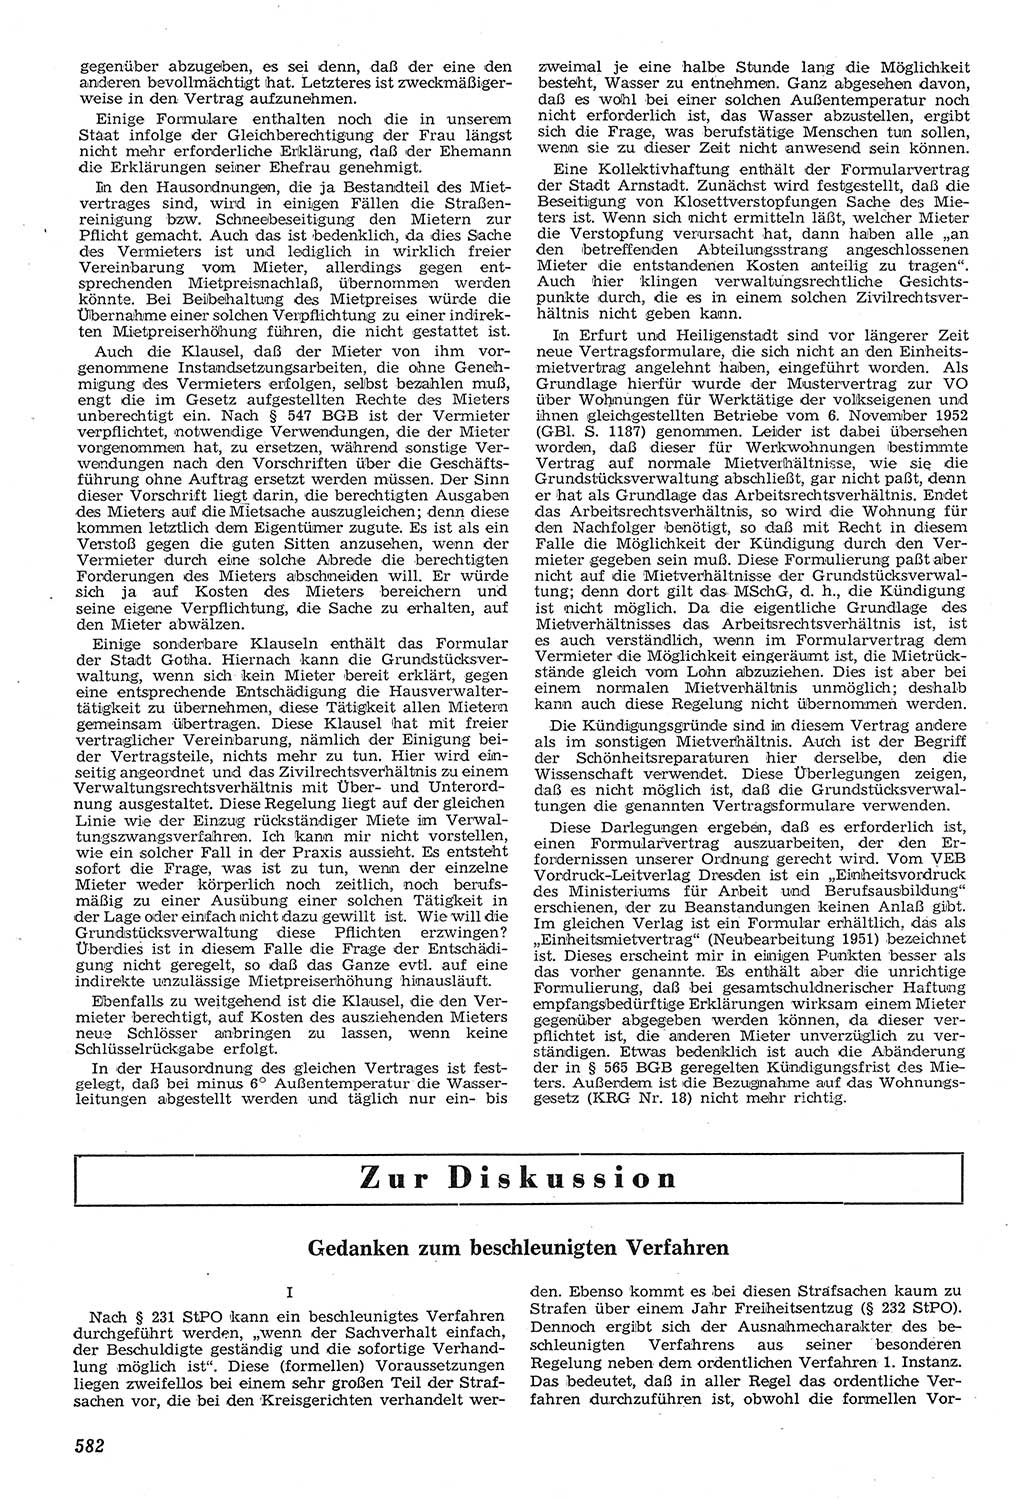 Neue Justiz (NJ), Zeitschrift für Recht und Rechtswissenschaft [Deutsche Demokratische Republik (DDR)], 11. Jahrgang 1957, Seite 582 (NJ DDR 1957, S. 582)